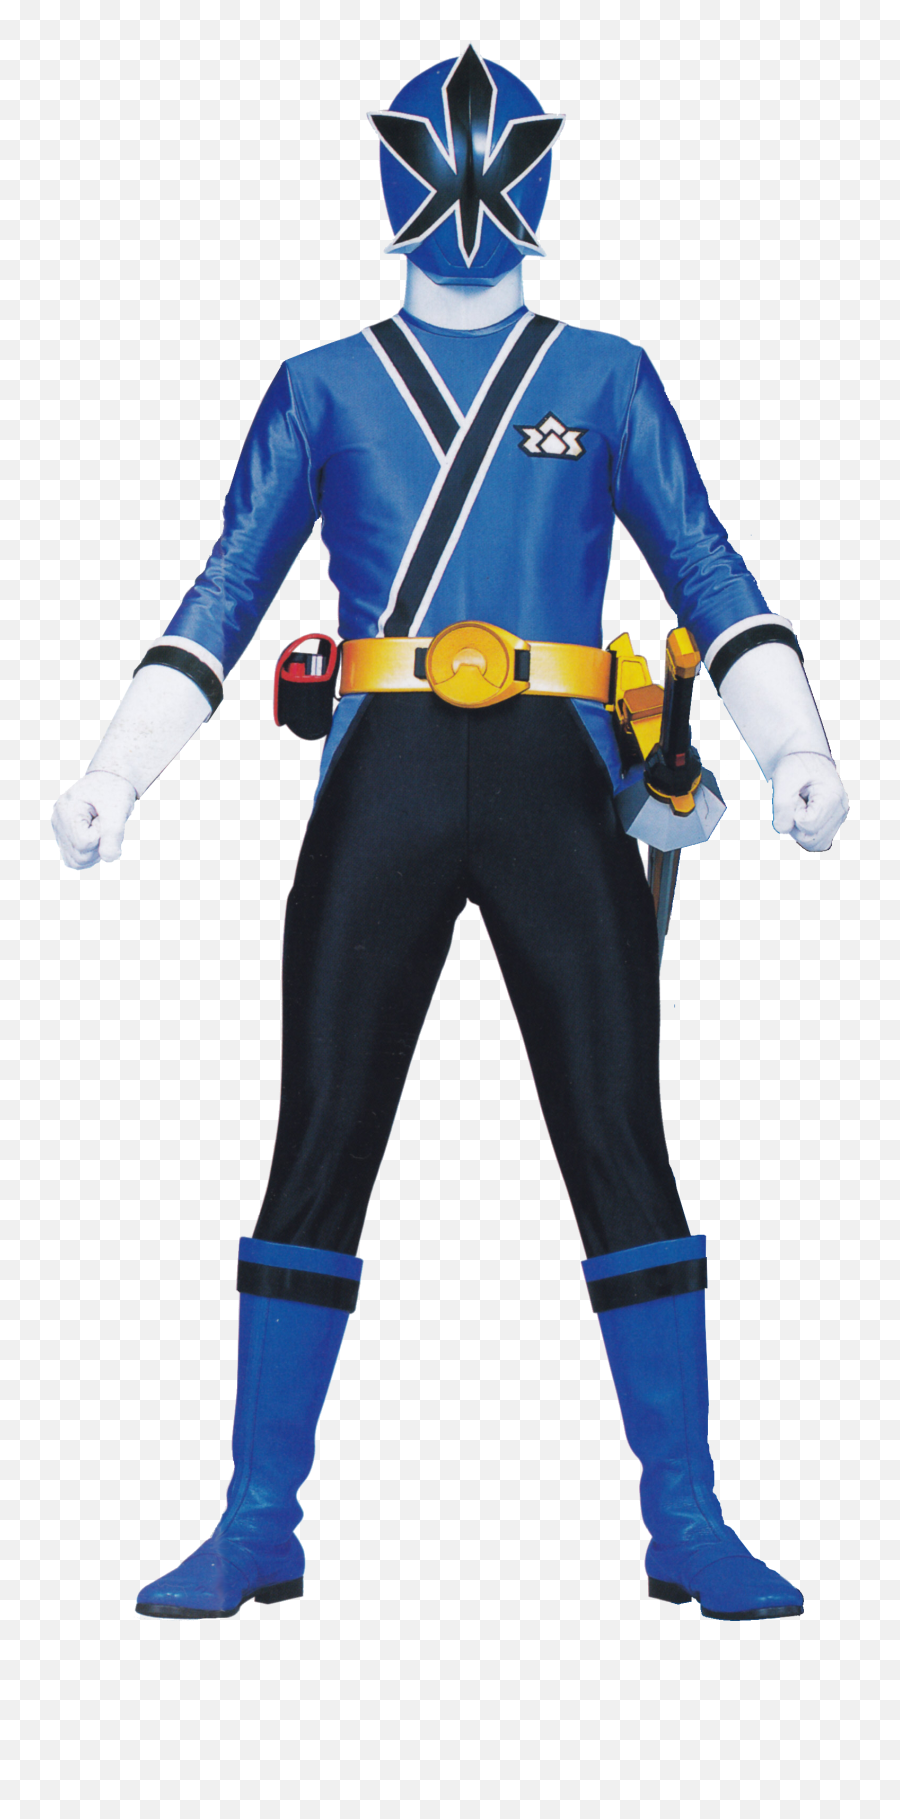 Blue Samurai Ranger - Power Rangers Samurai Red Ranger Png,Power Ranger Png